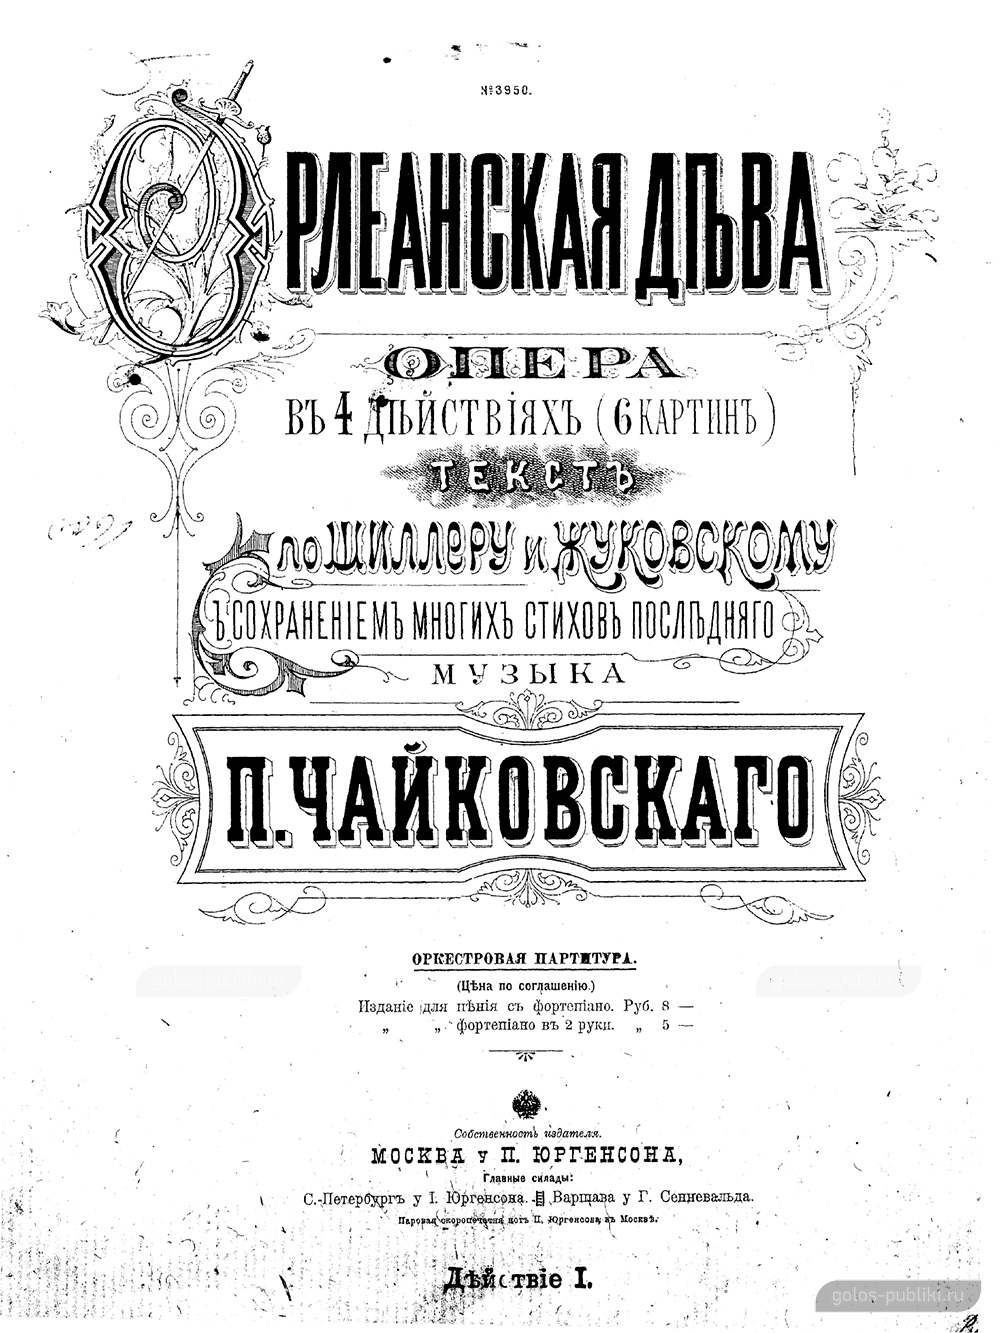 Титульный лист партитуры оперы «Орлеанская дева», издание П. Юргенсона, 1899